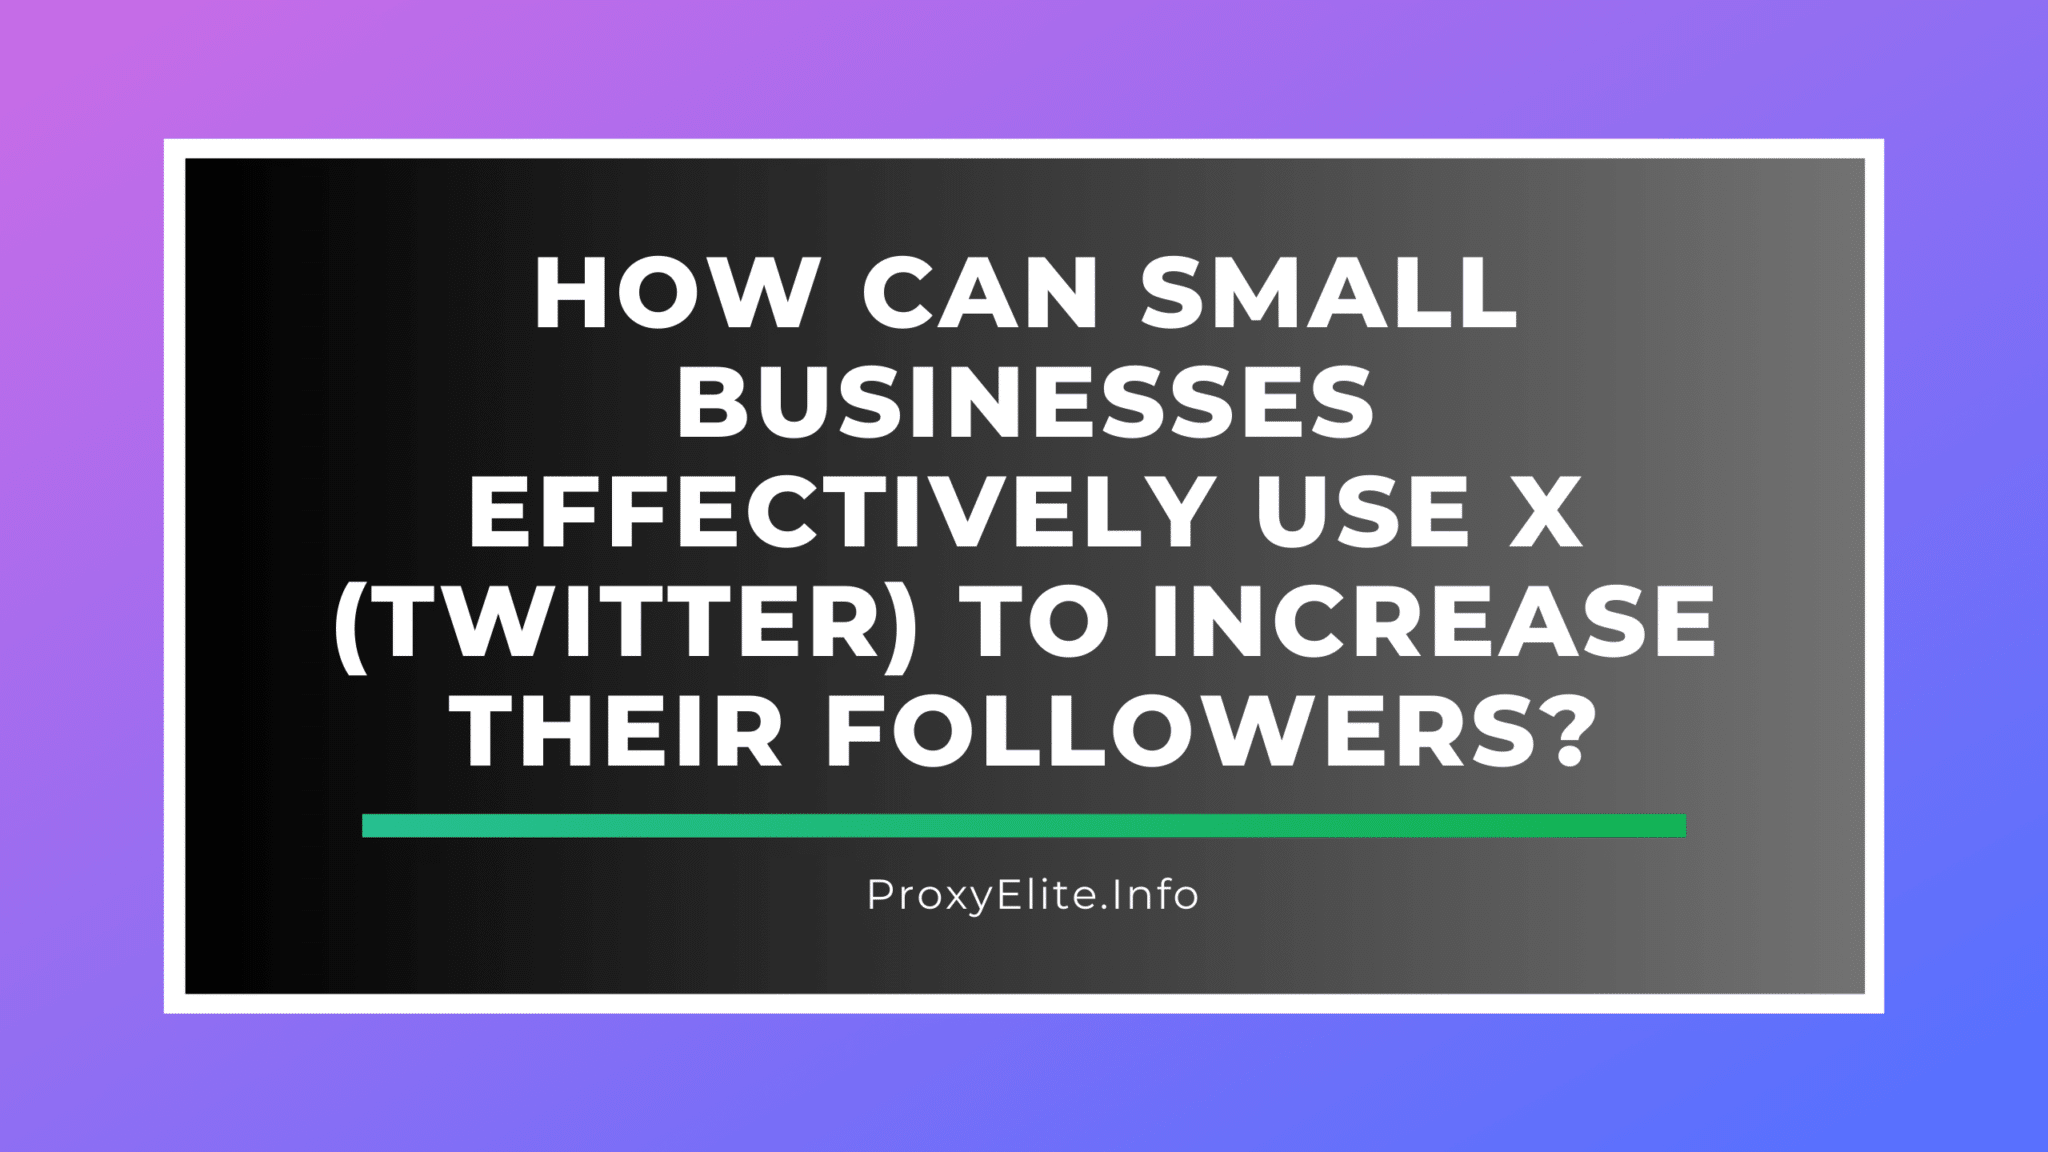 Як малі підприємства можуть ефективно використовувати X (Twitter), щоб збільшити кількість підписників?